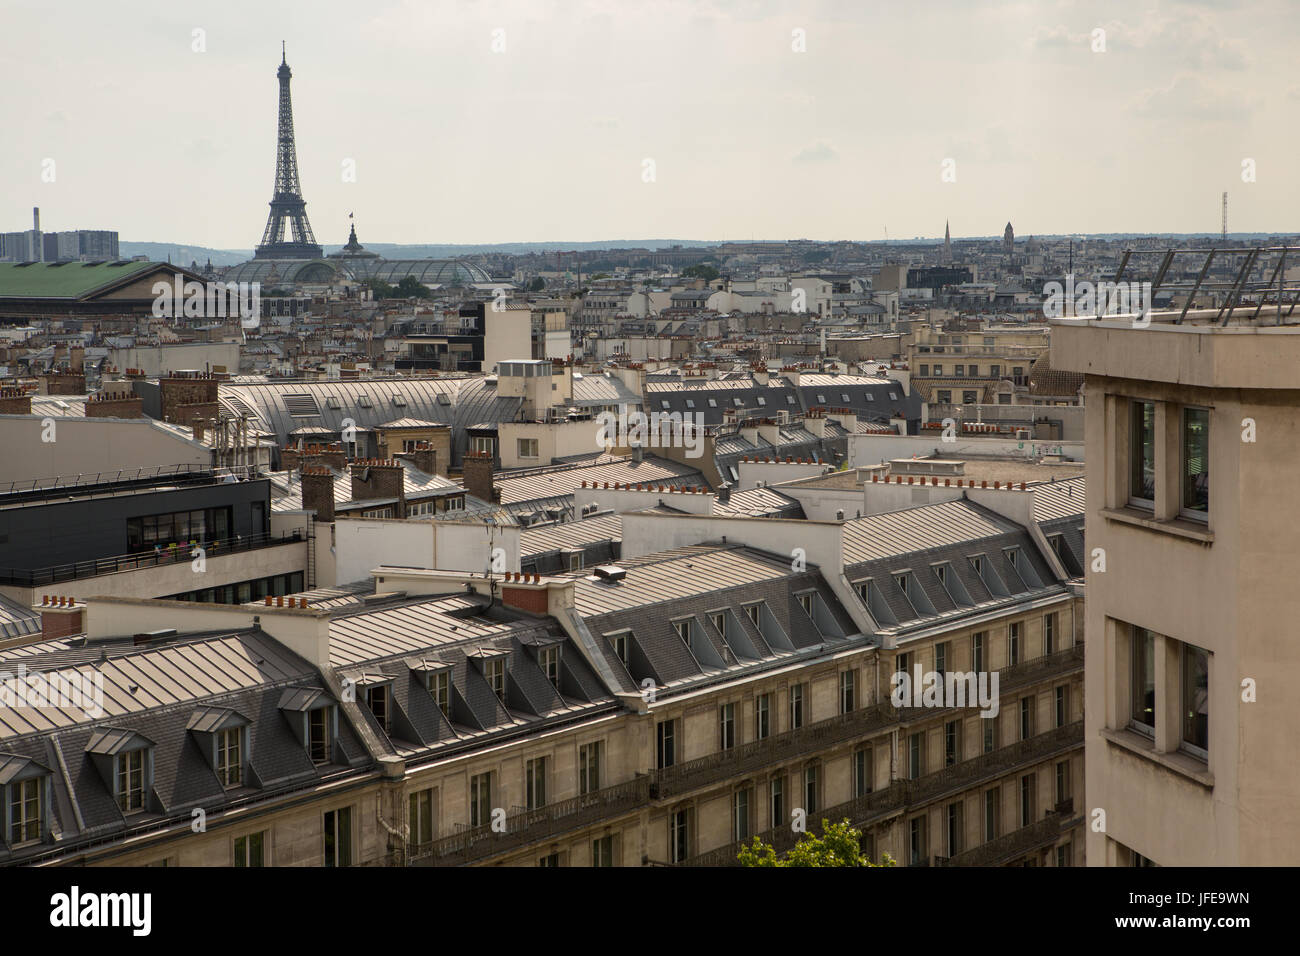 La Torre Eiffel domina el paisaje urbano de París. Foto de stock